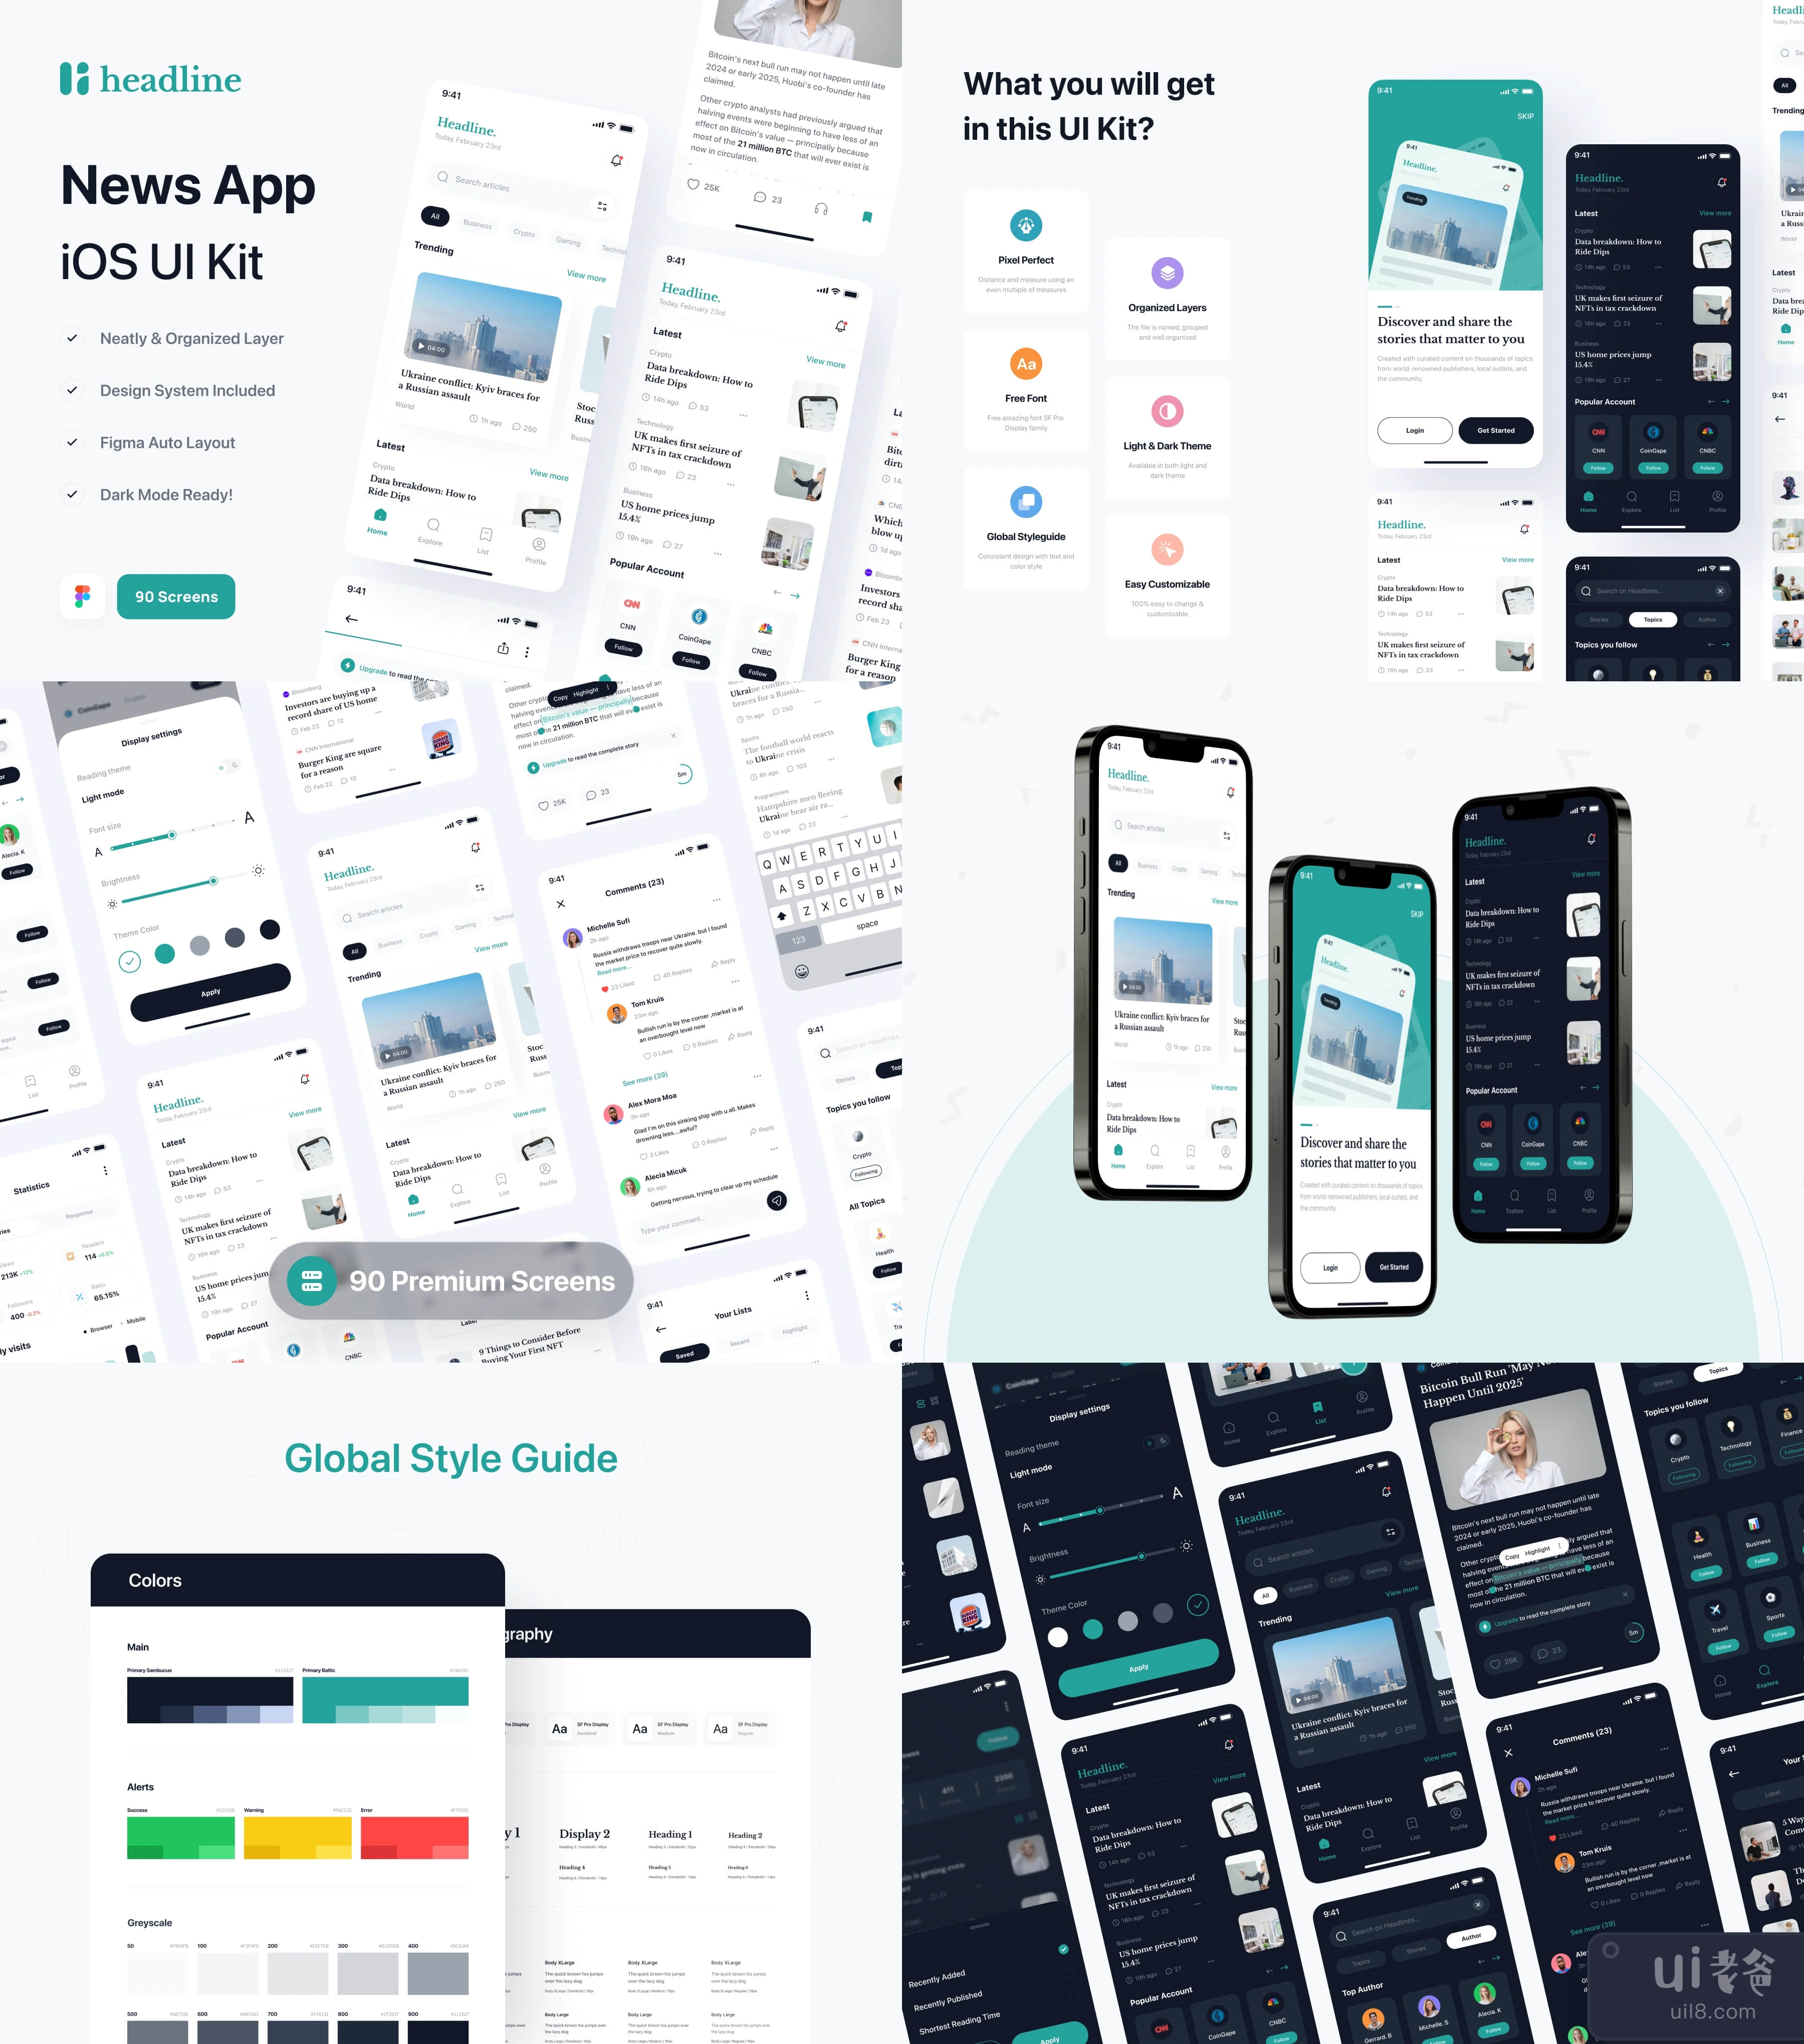 头条新闻 - 新闻应用UI Kit (Headline - News App UI Kit)插图